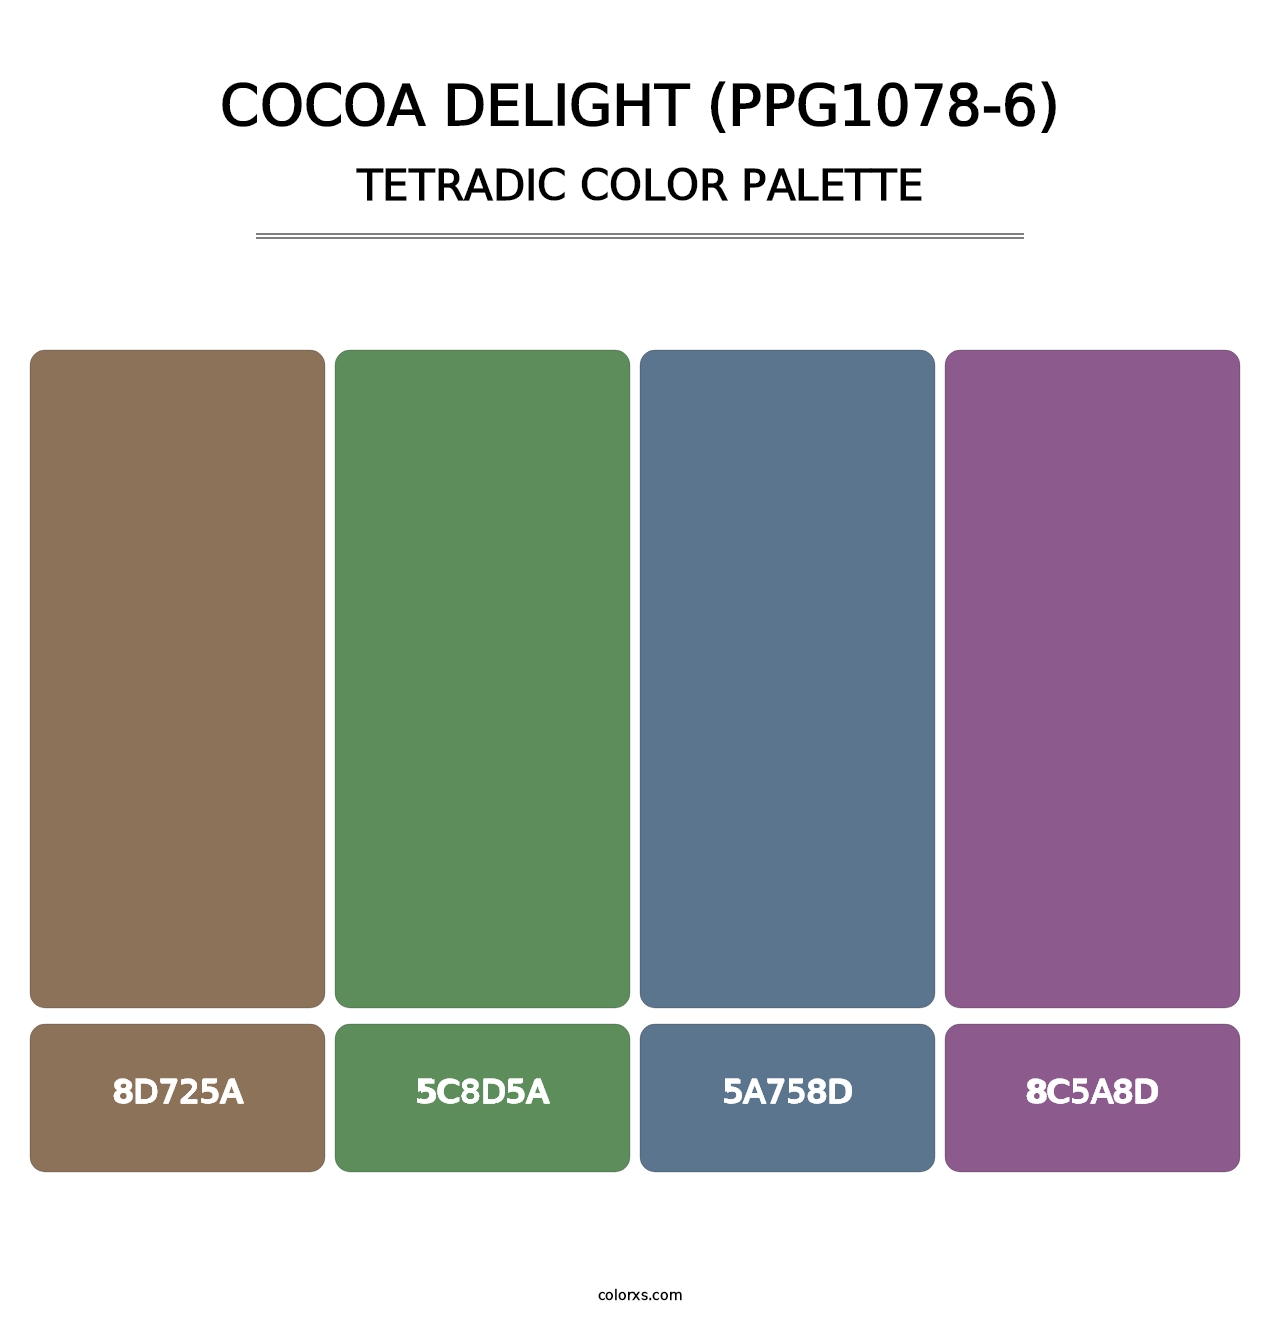 Cocoa Delight (PPG1078-6) - Tetradic Color Palette